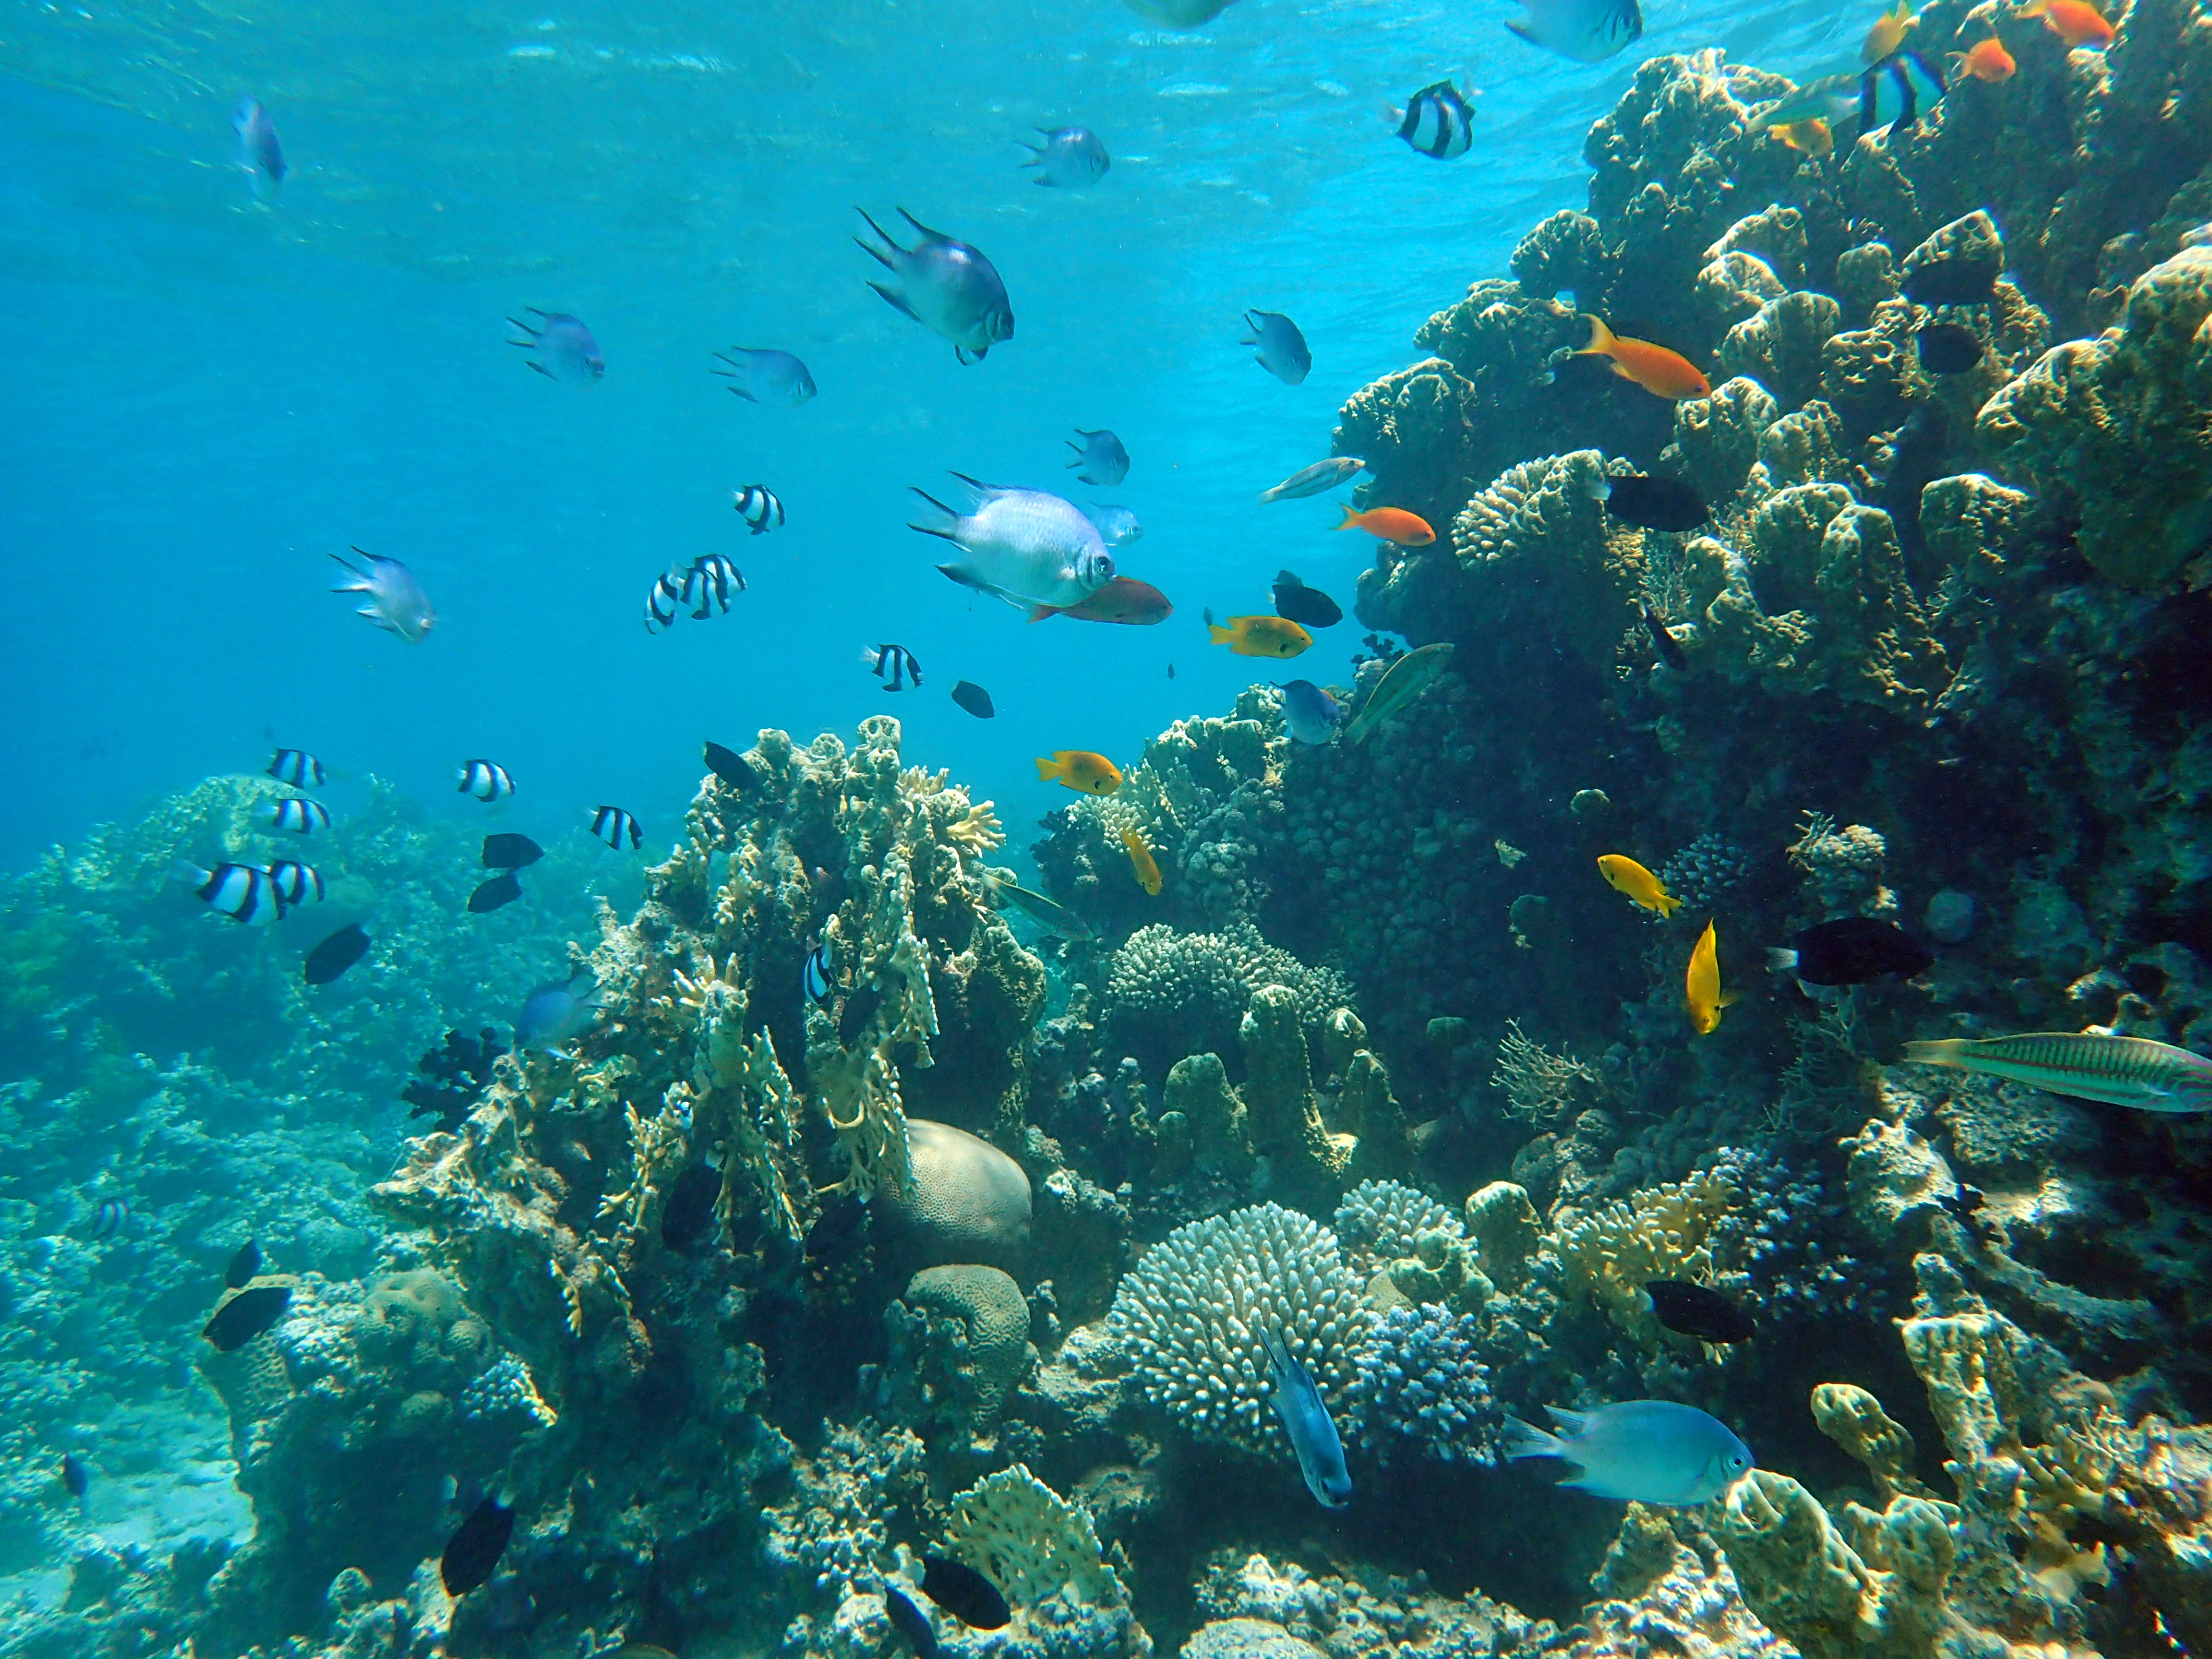 Snorkeling coi pesci del Mar Rosso